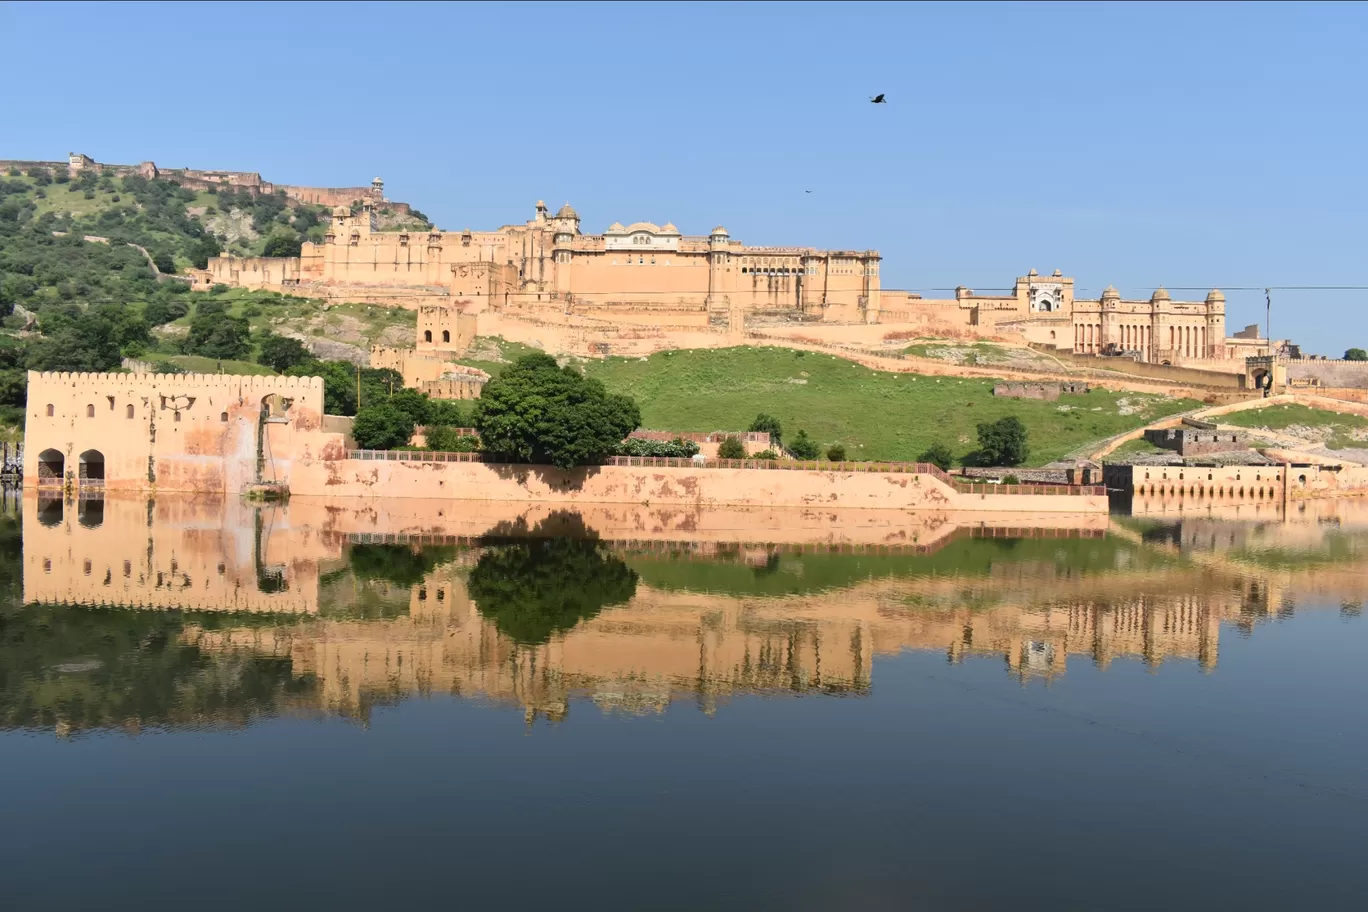 Photo of Amer Fort Jaipur By Aman Sain